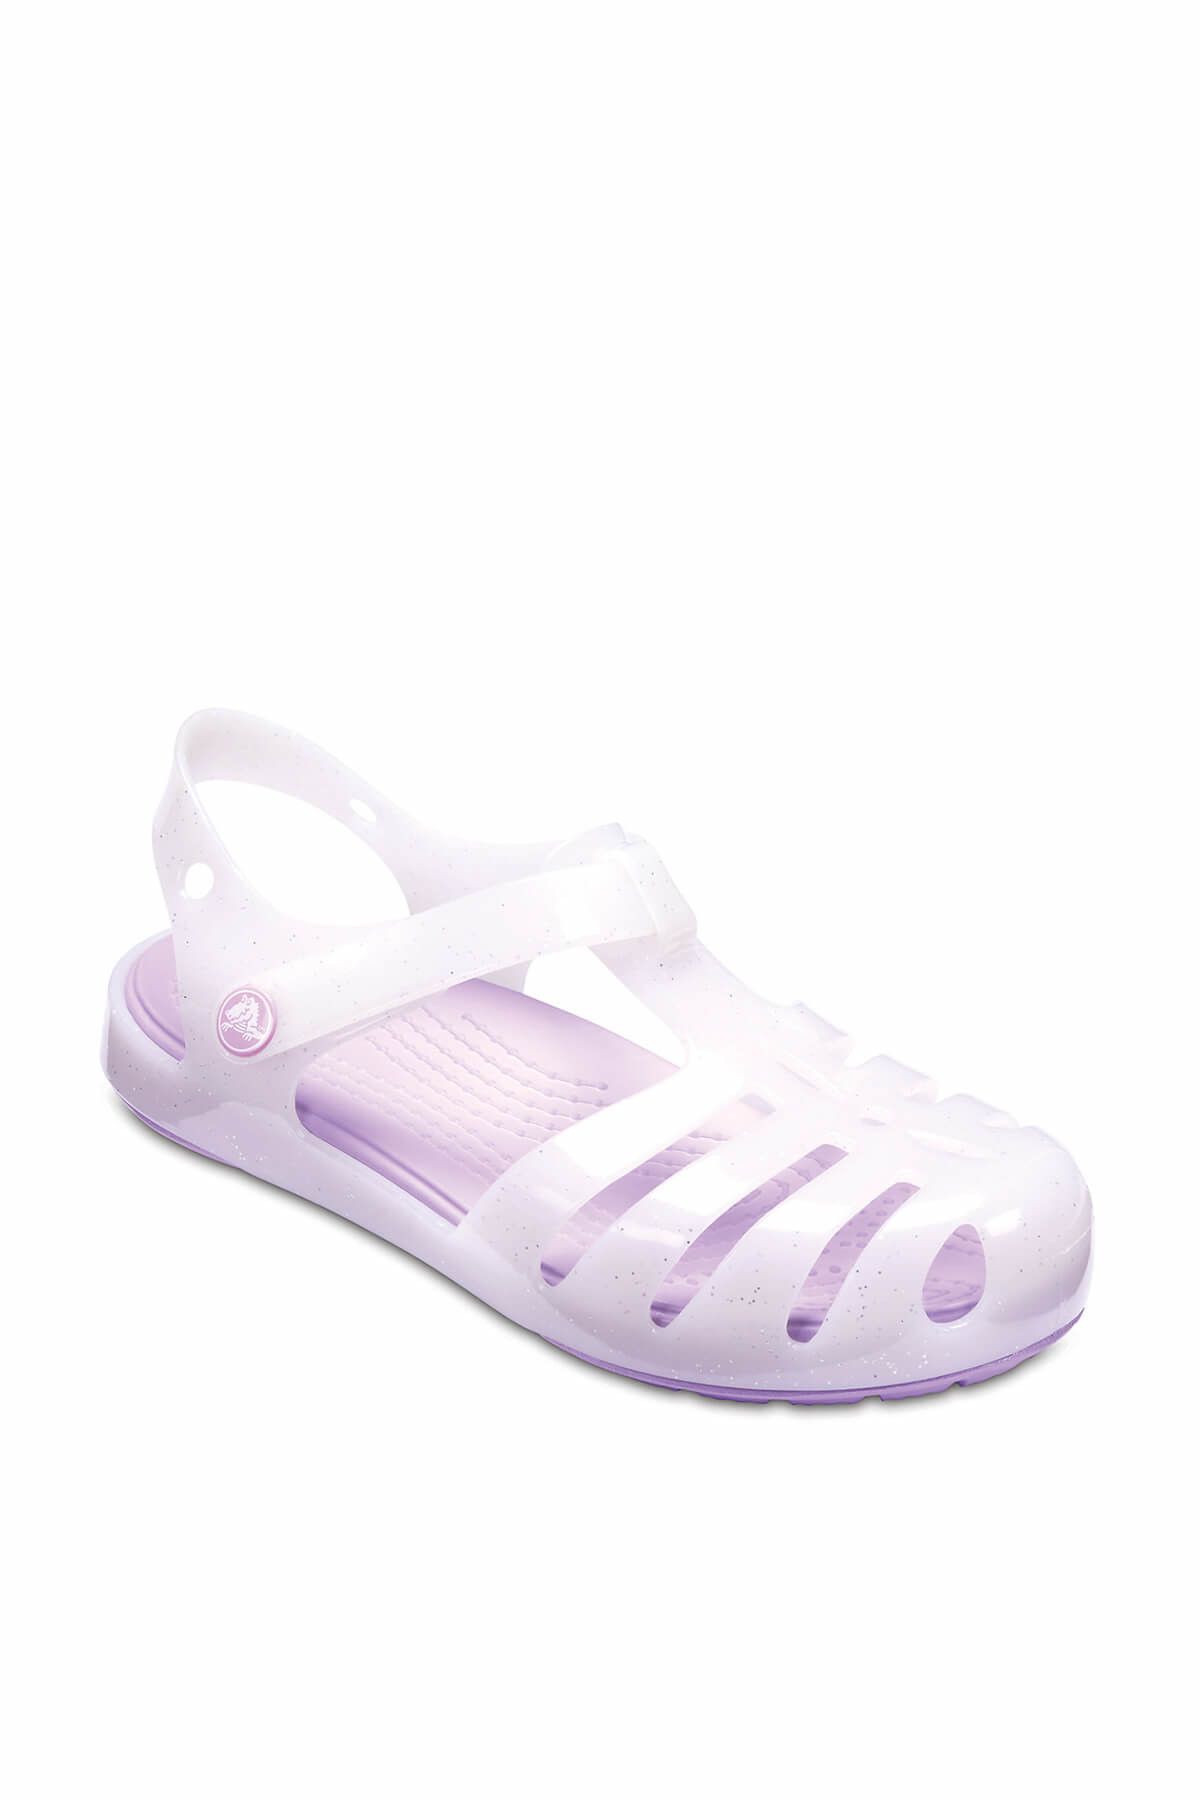 Crocs Beyaz Unisex Çocuk Sandalet 204035-100